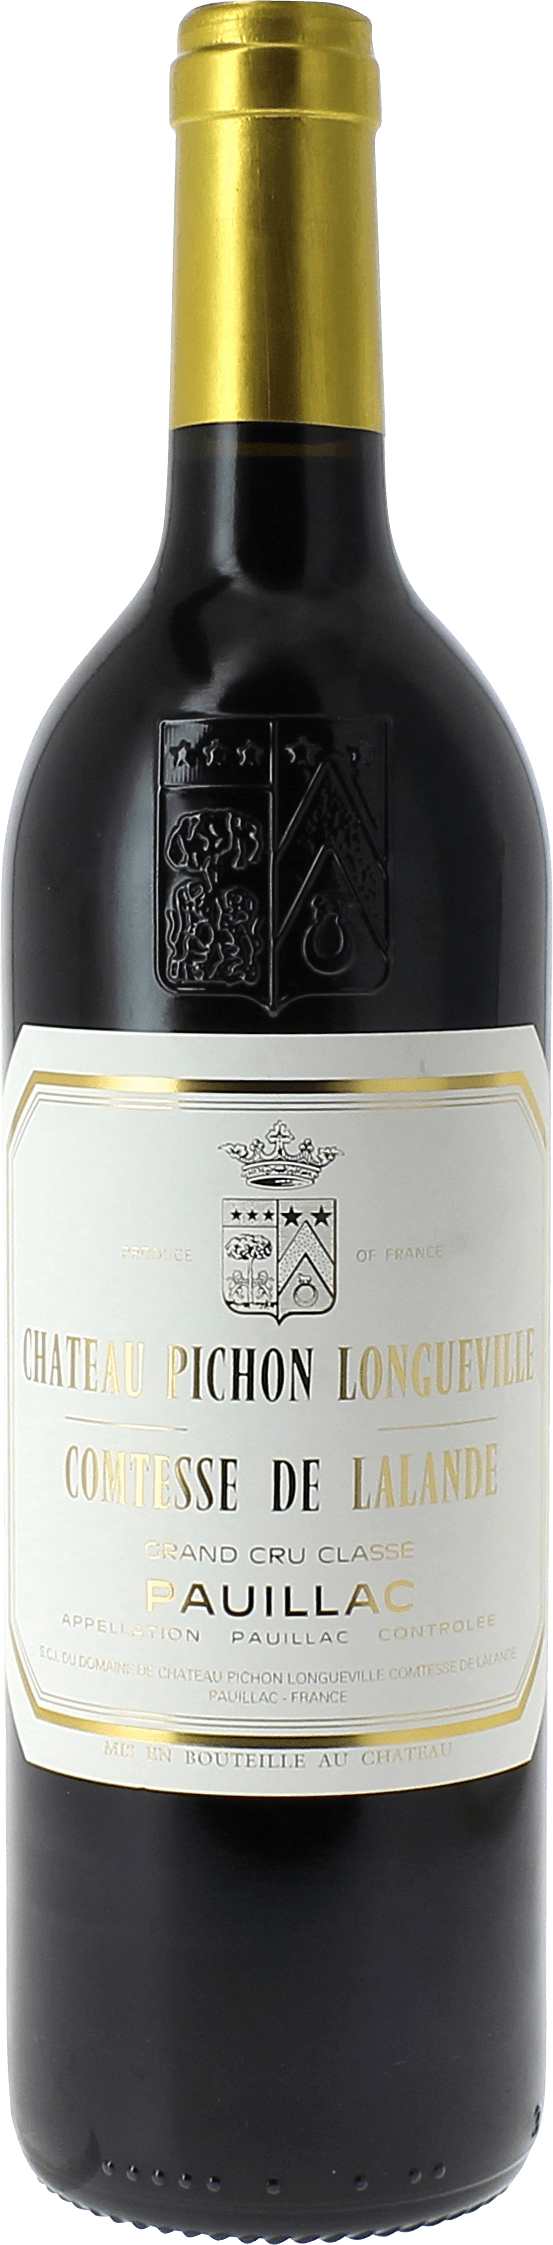 Pichon comtesse de lalande 1994 2me Grand cru class Pauillac, Bordeaux rouge